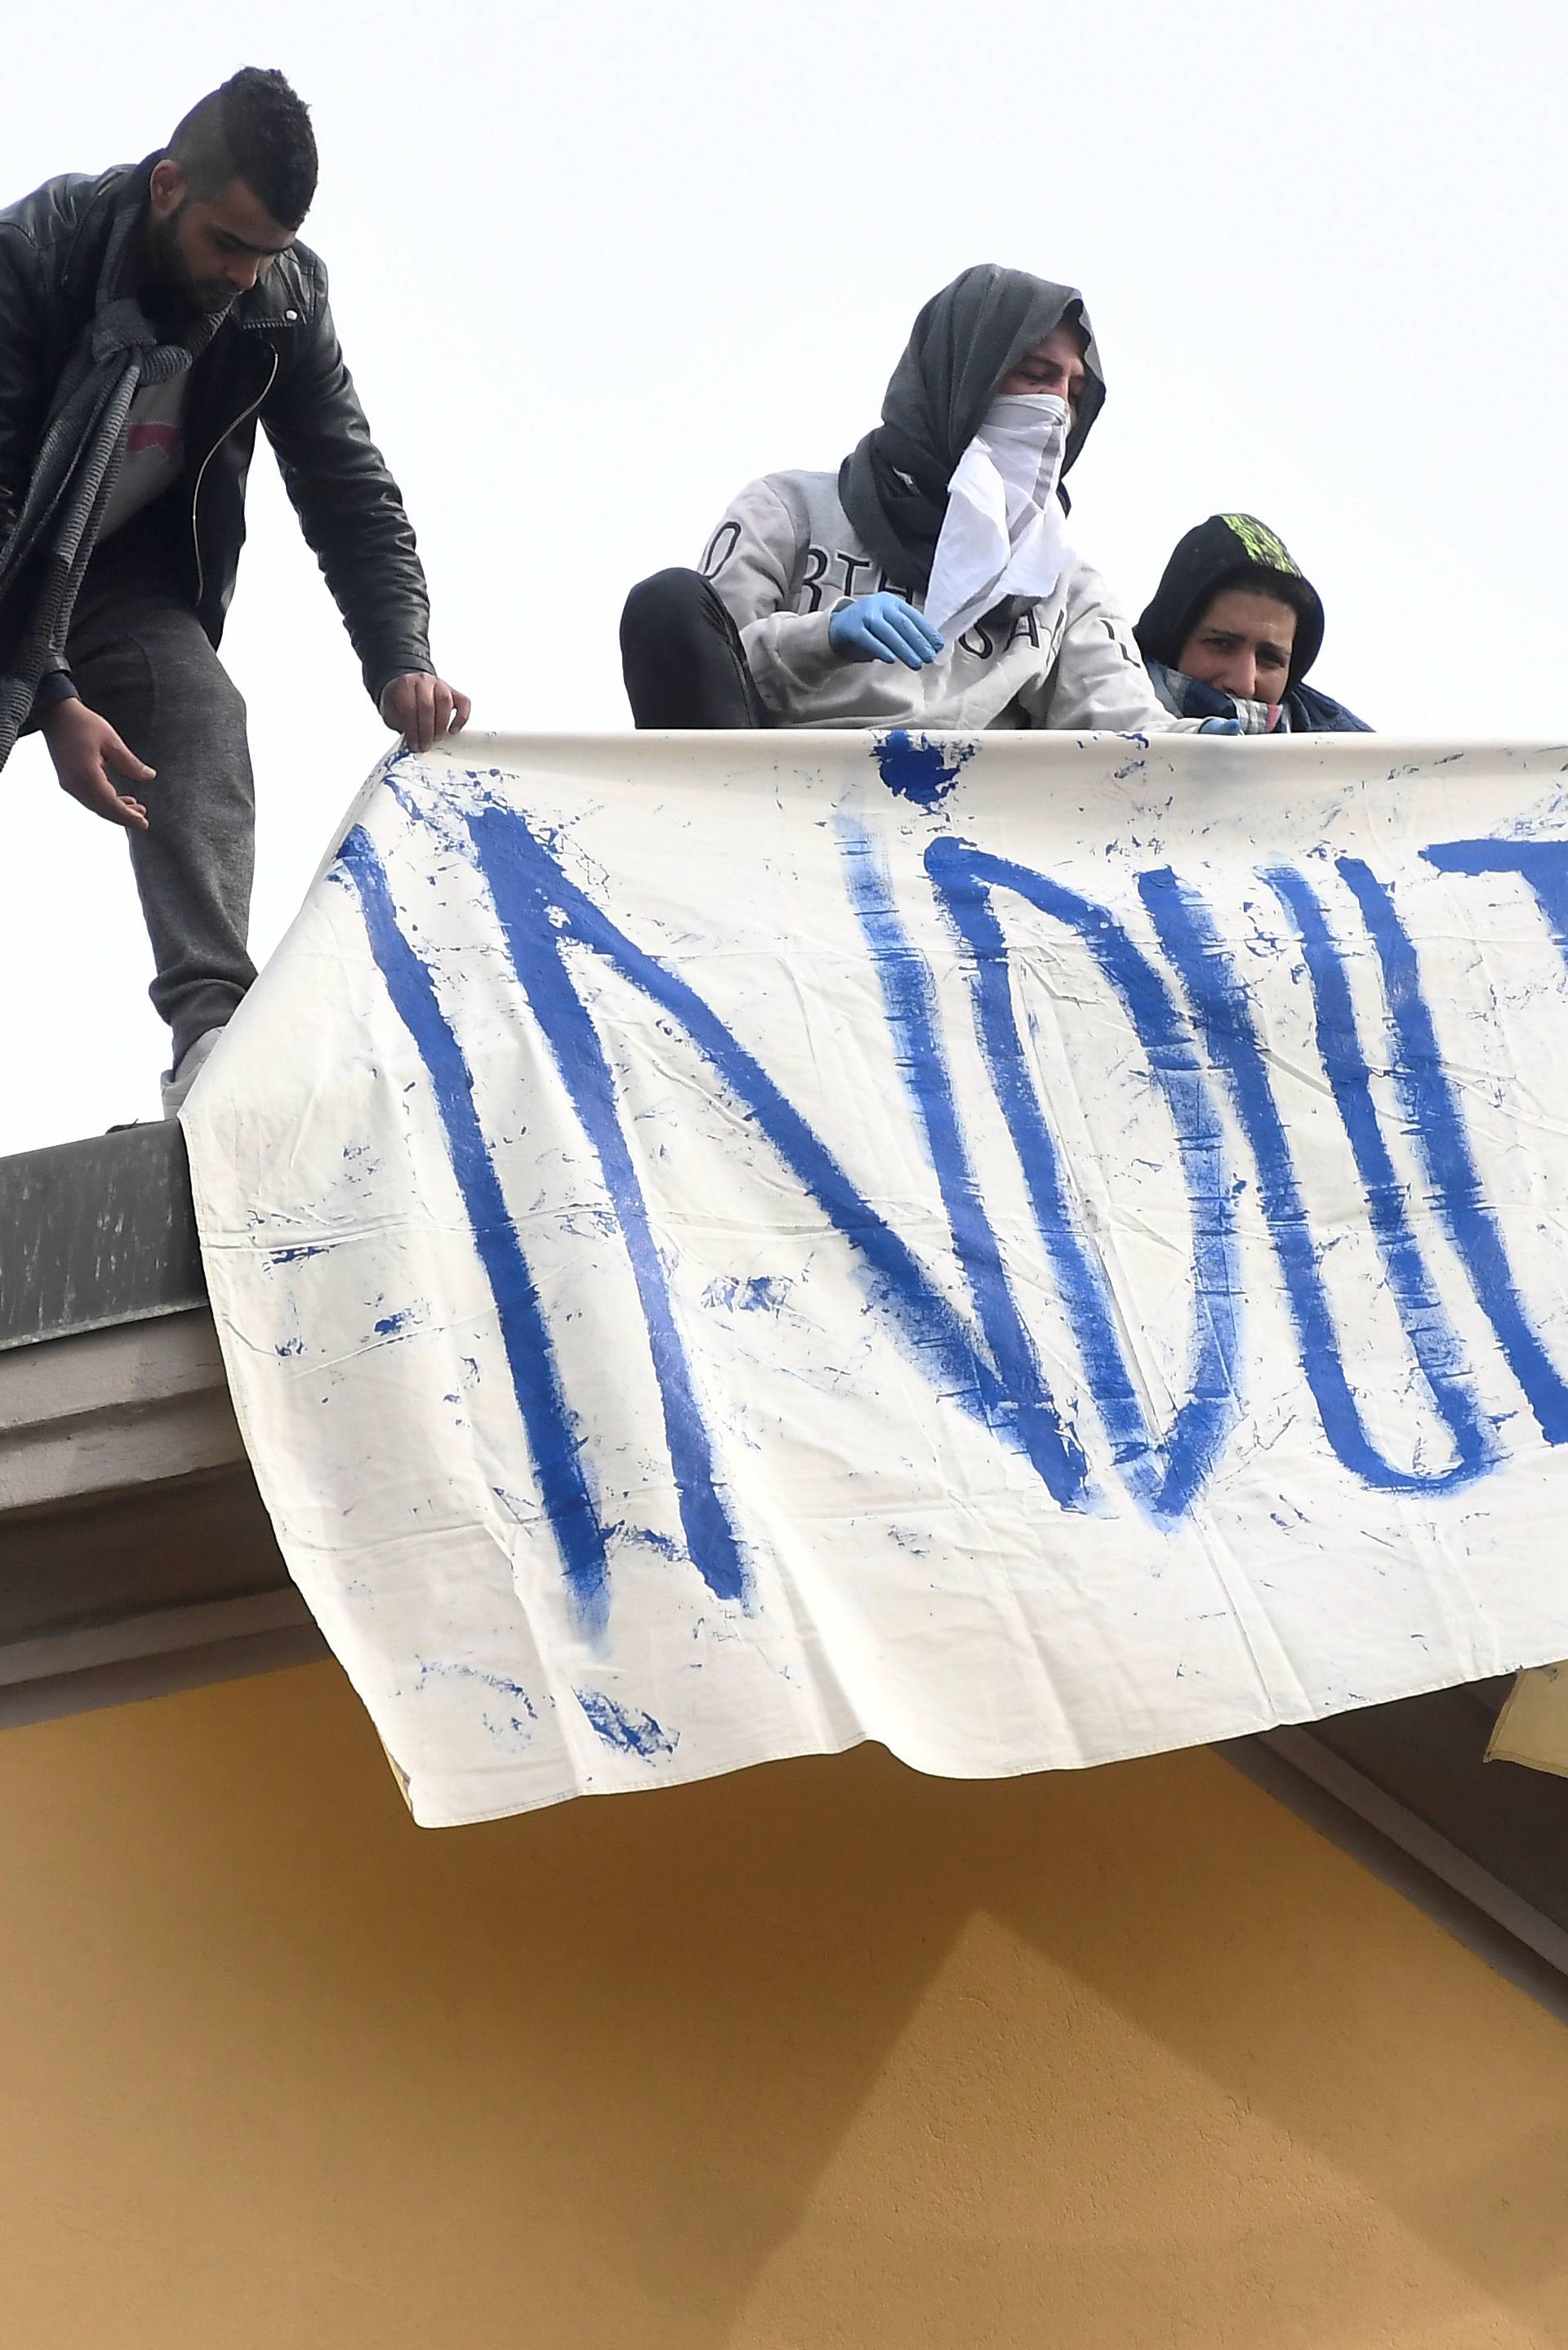 Totalni kaos u Italiji: Ispred zatvora mlate se s policijom